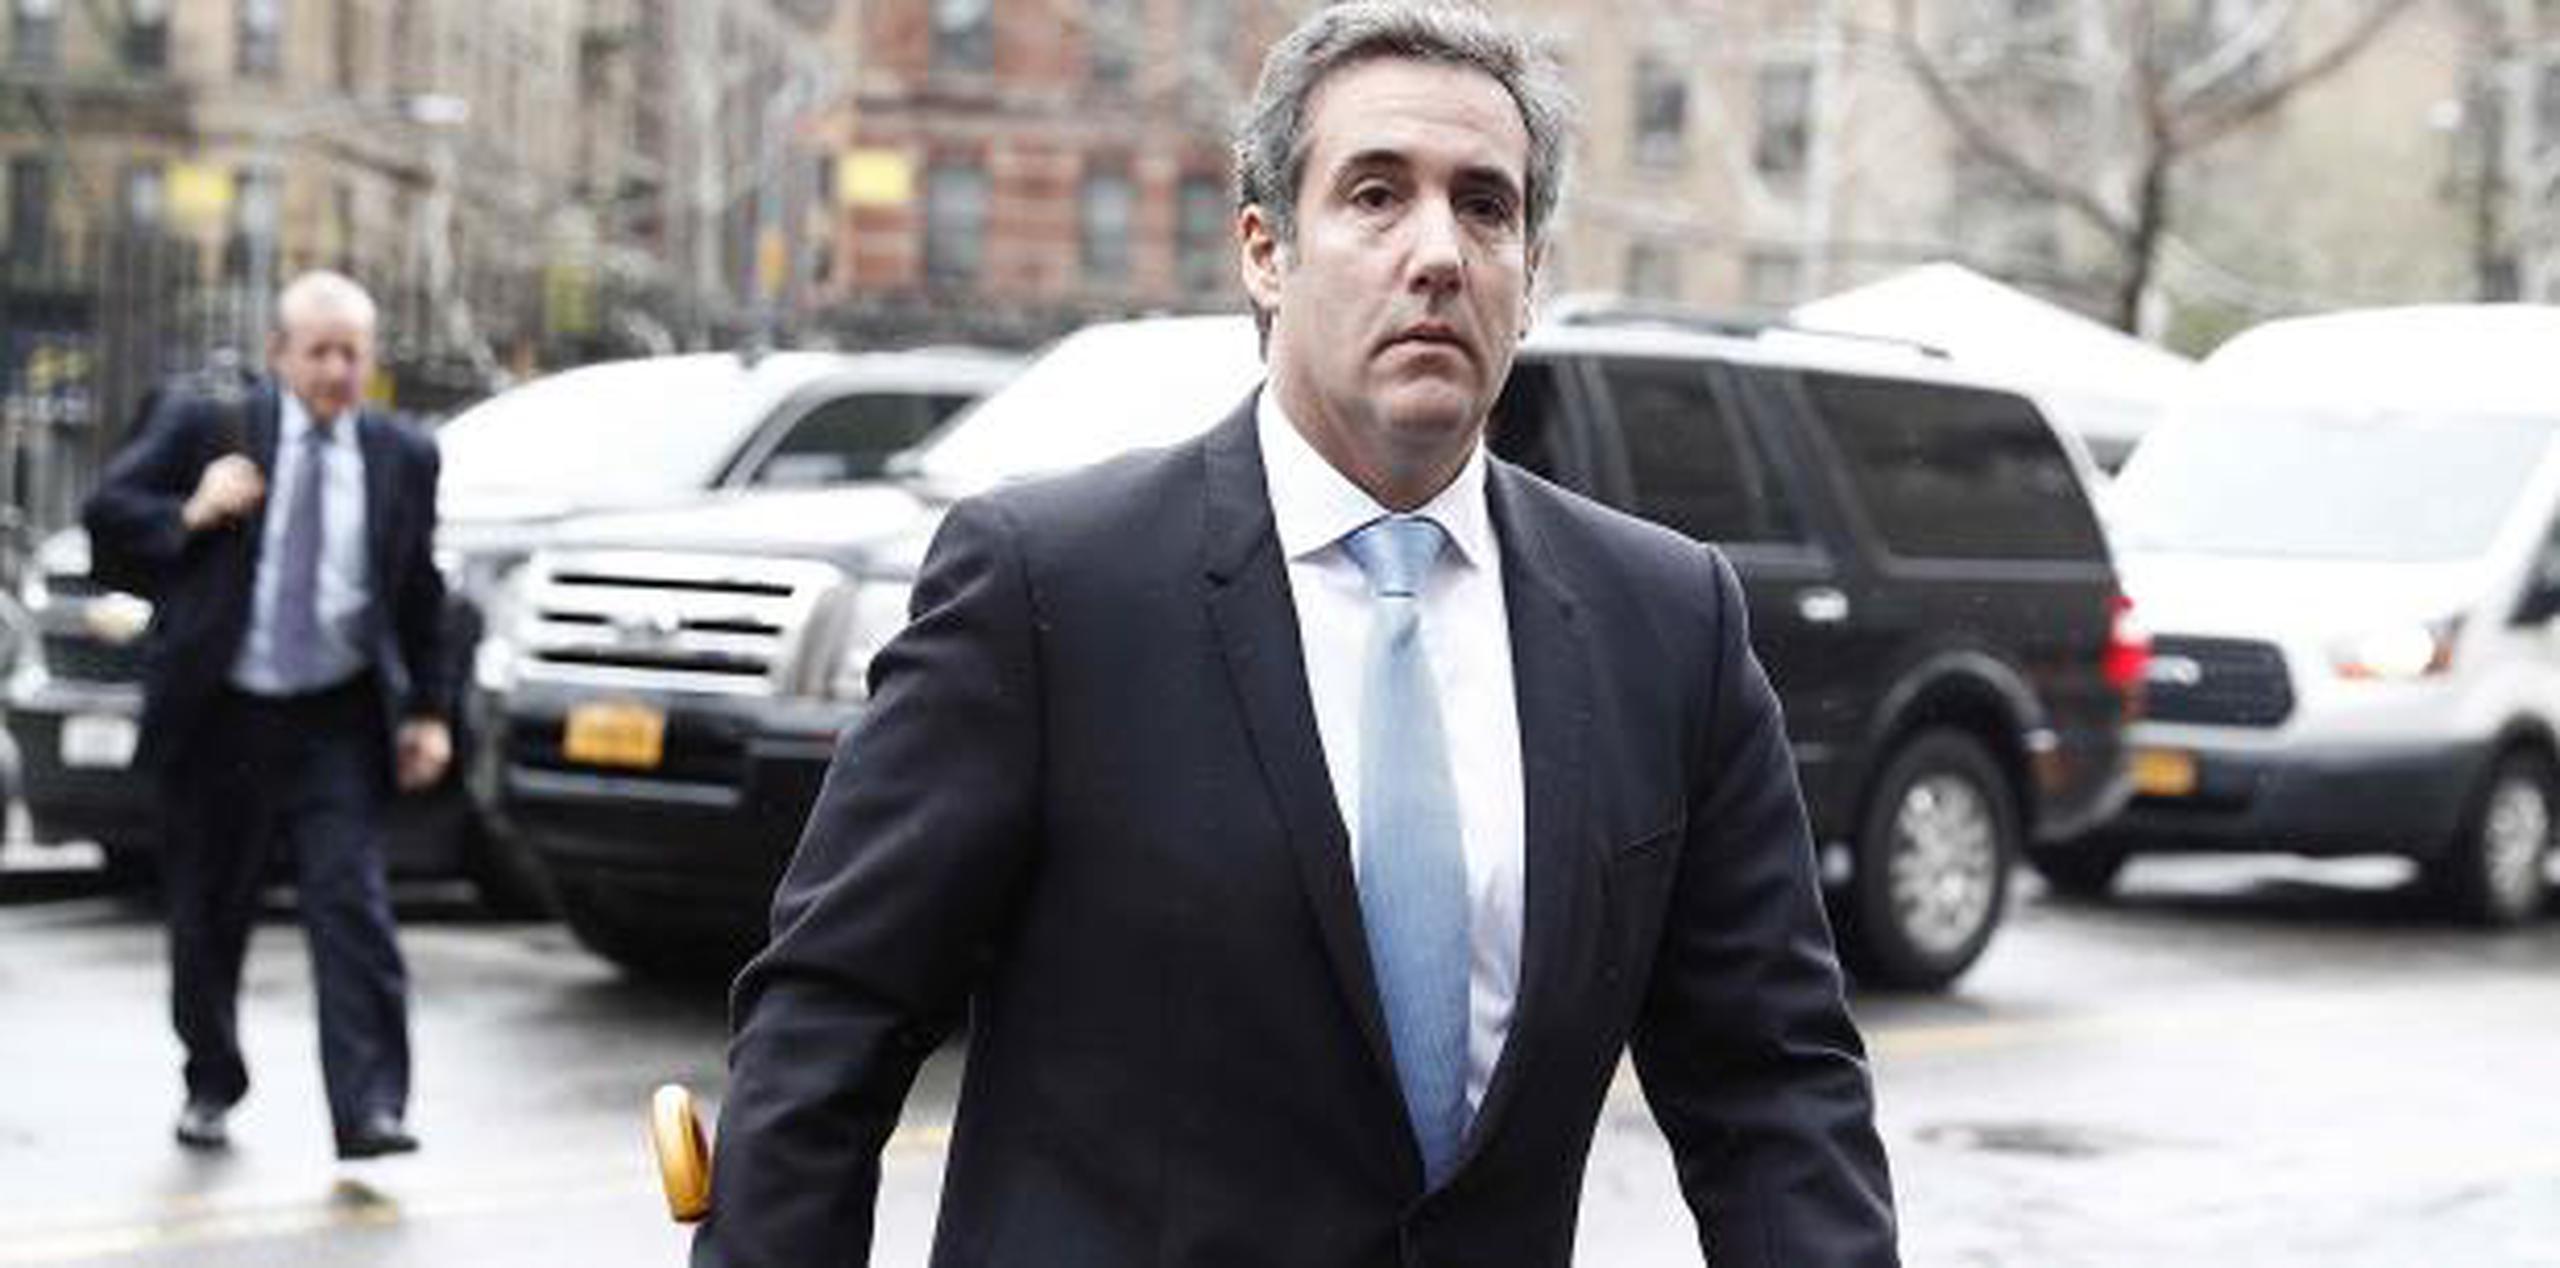 Los fiscales federales en Nueva York han dicho en público que investigan denuncias de que Cohen cometió fraude en sus negocios, pero no han dado a conocer los detalles.  (AP)

